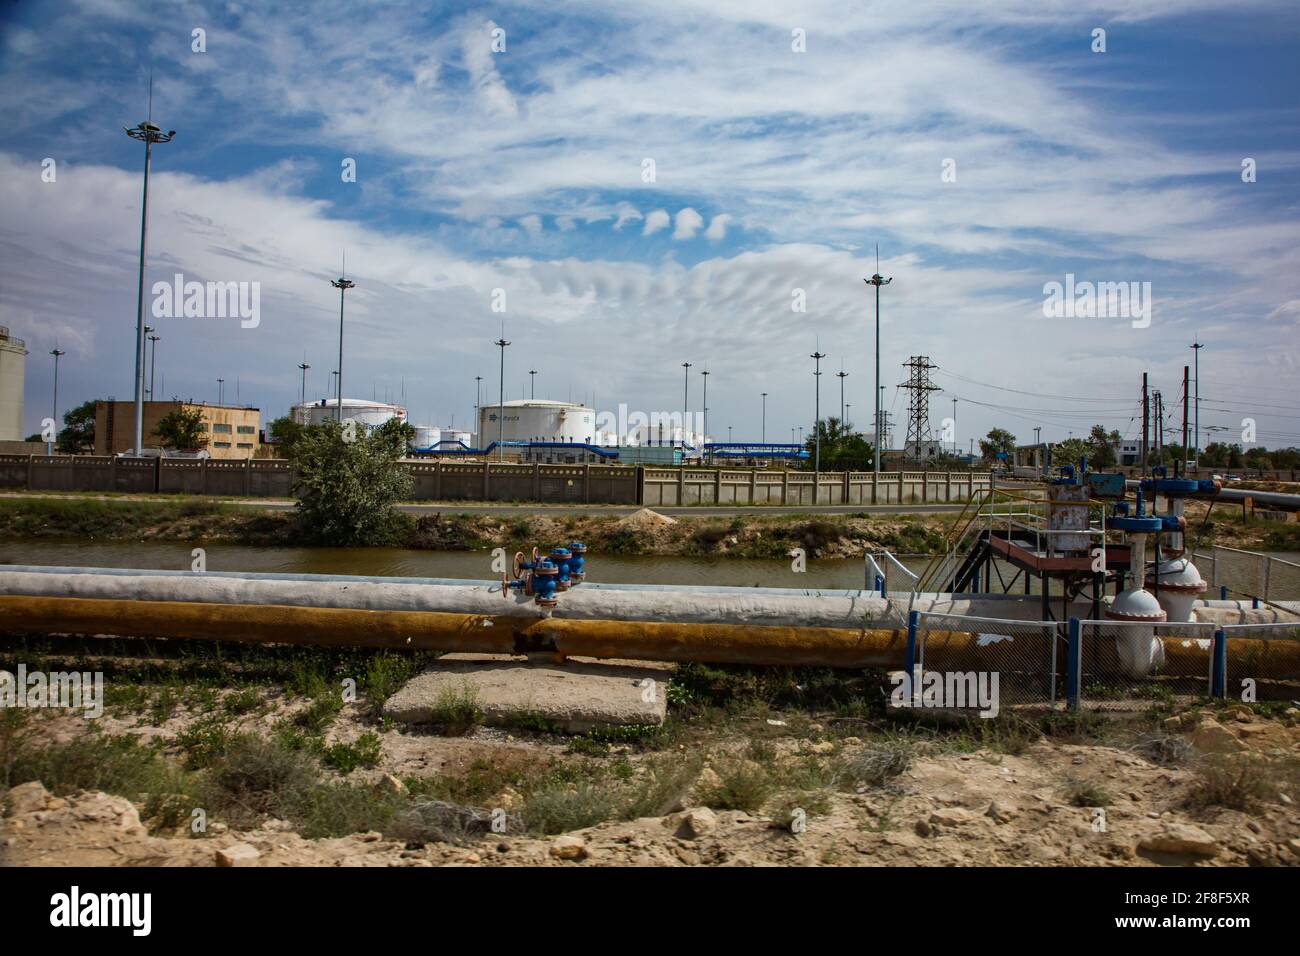 Aktau, Kazakhstan - mai 19 2012 : terminal de stockage de pétrole sur la mer Caspienne. Port de chargement d'Aktau. Réservoirs et mâts KaztransOil et tuyaux avec vannes. Banque D'Images